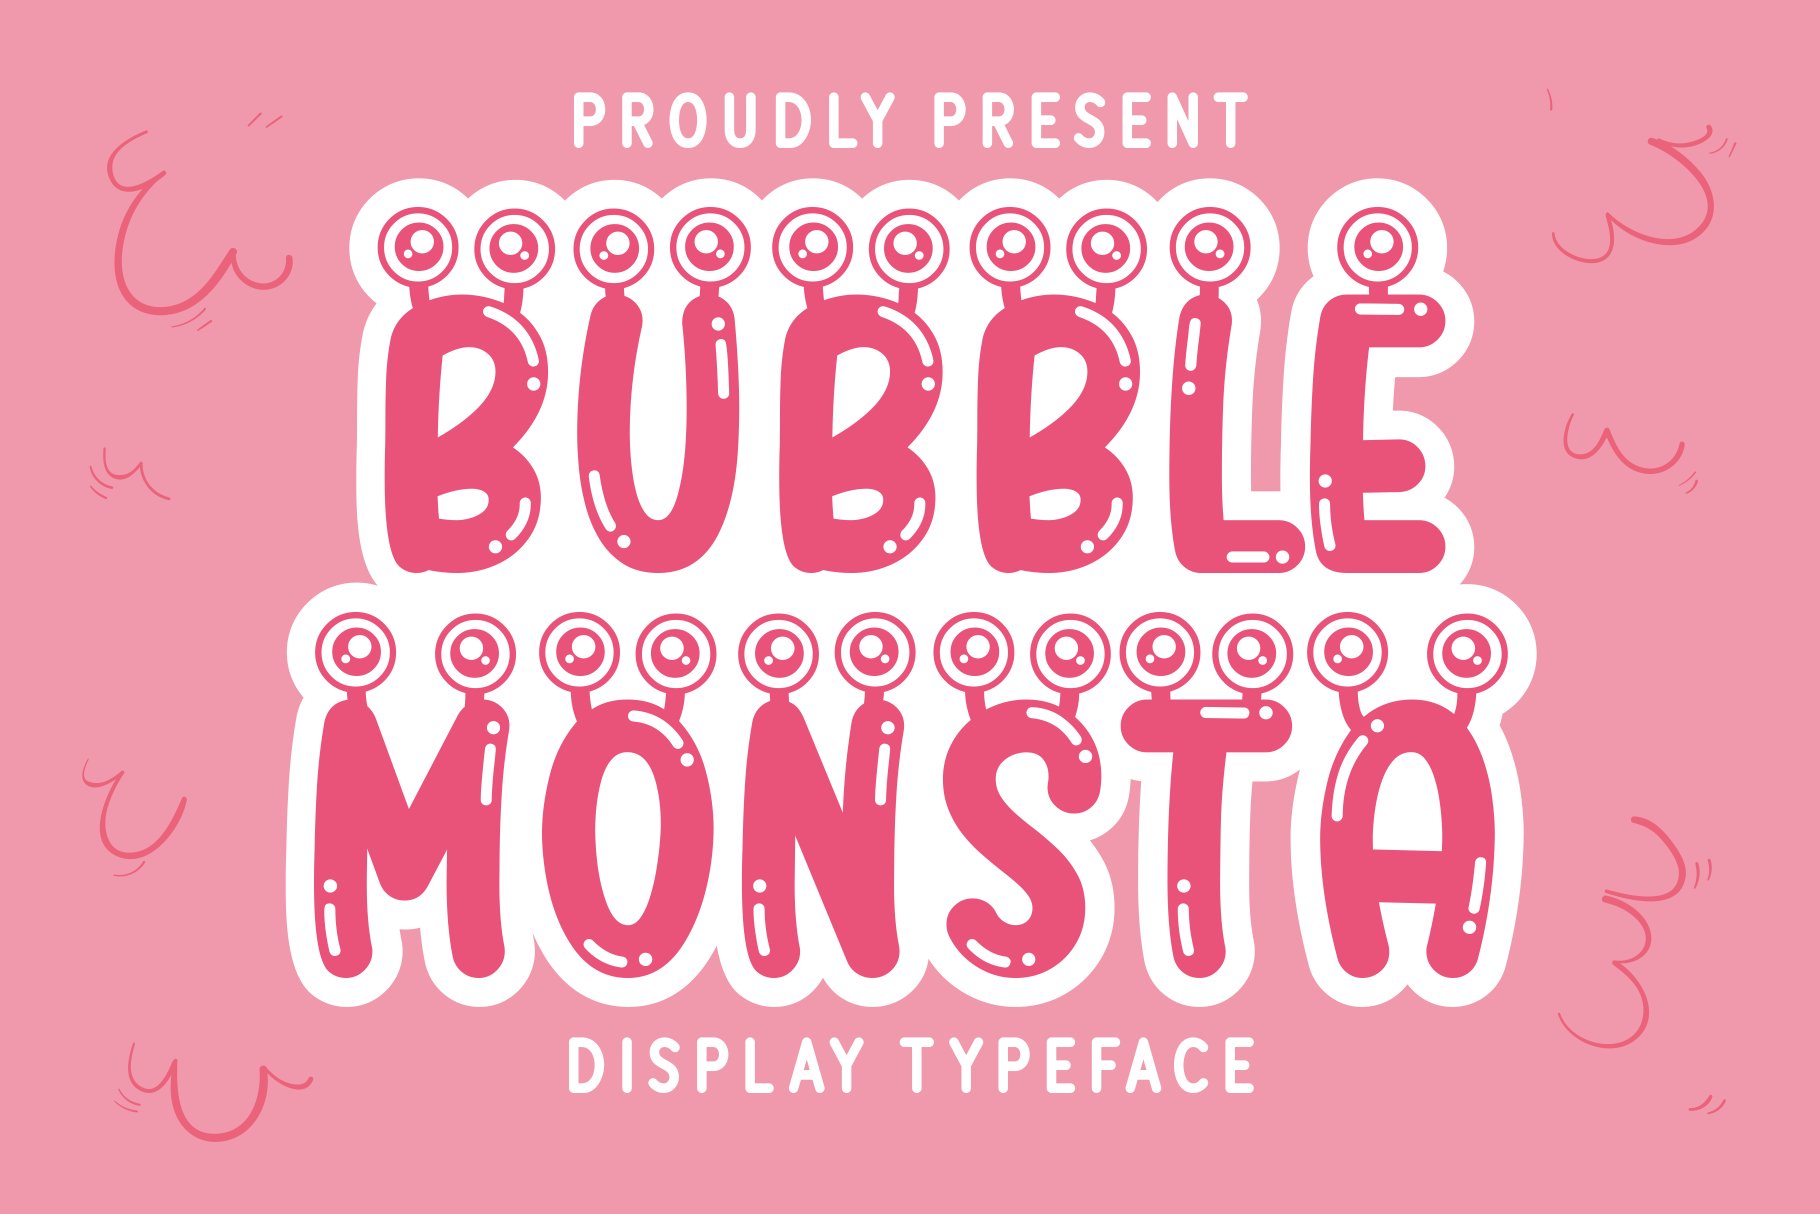 Bubble Monsta cover image.